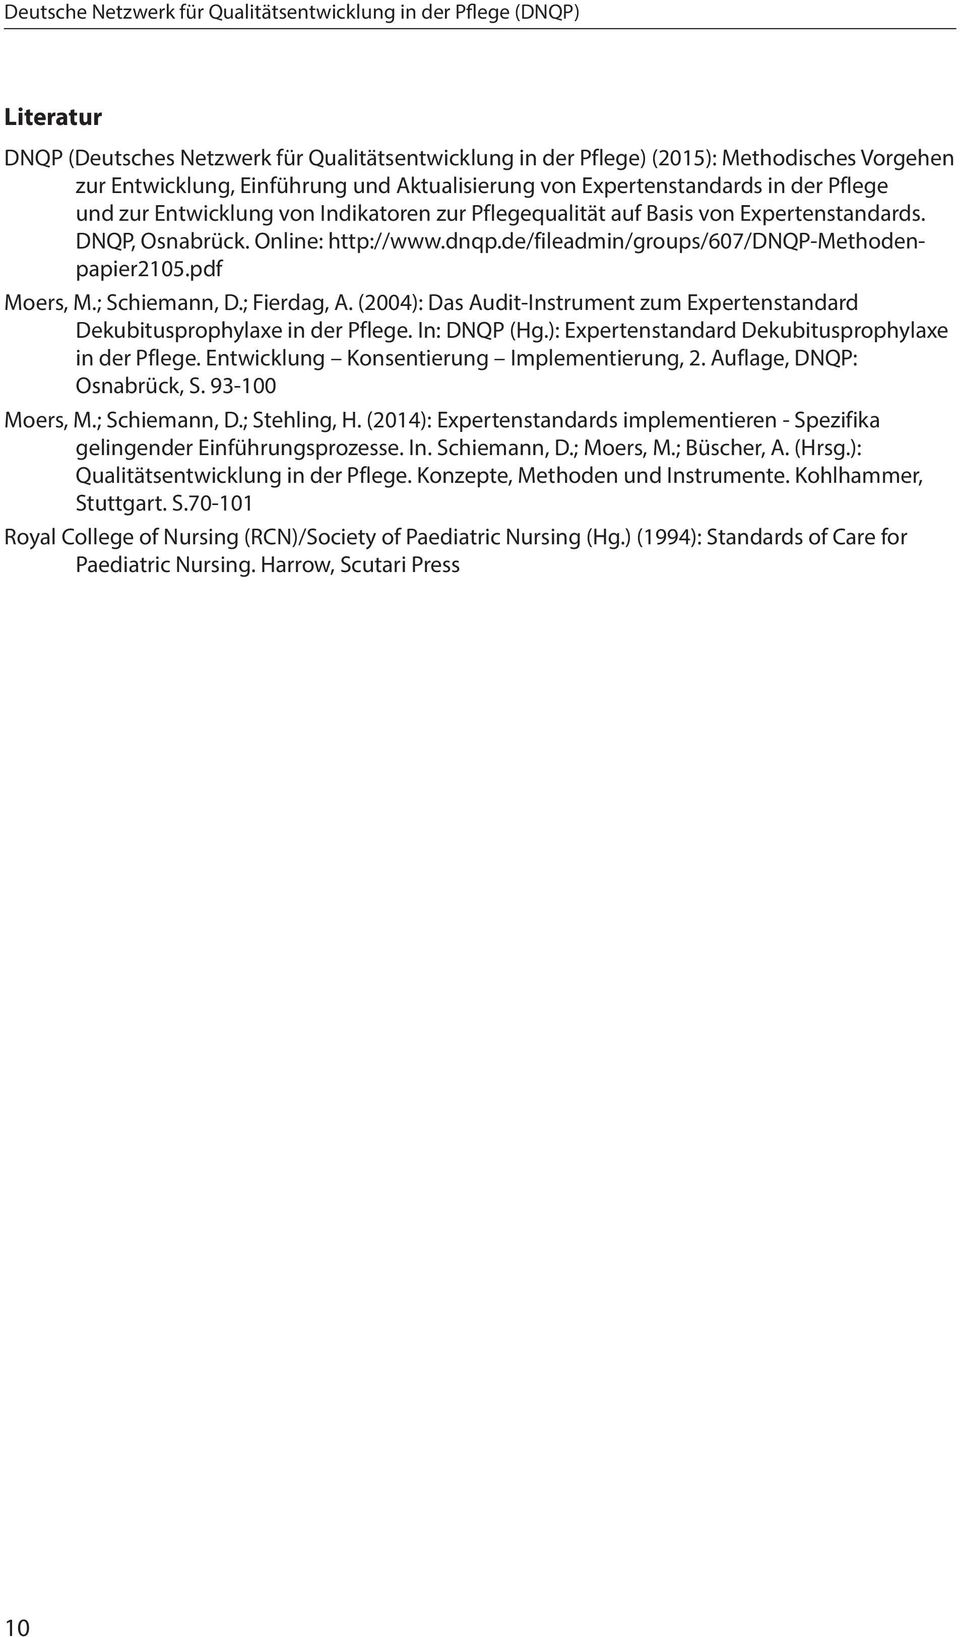 de/fileadmin/groups/607/dnqp-methodenpapier2105.pdf Moers, M.; Schiemann, D.; Fierdag, A. (2004): Das Audit-Instrument zum Expertenstandard Dekubitusprophylaxe in der Pflege. In: DNQP (Hg.